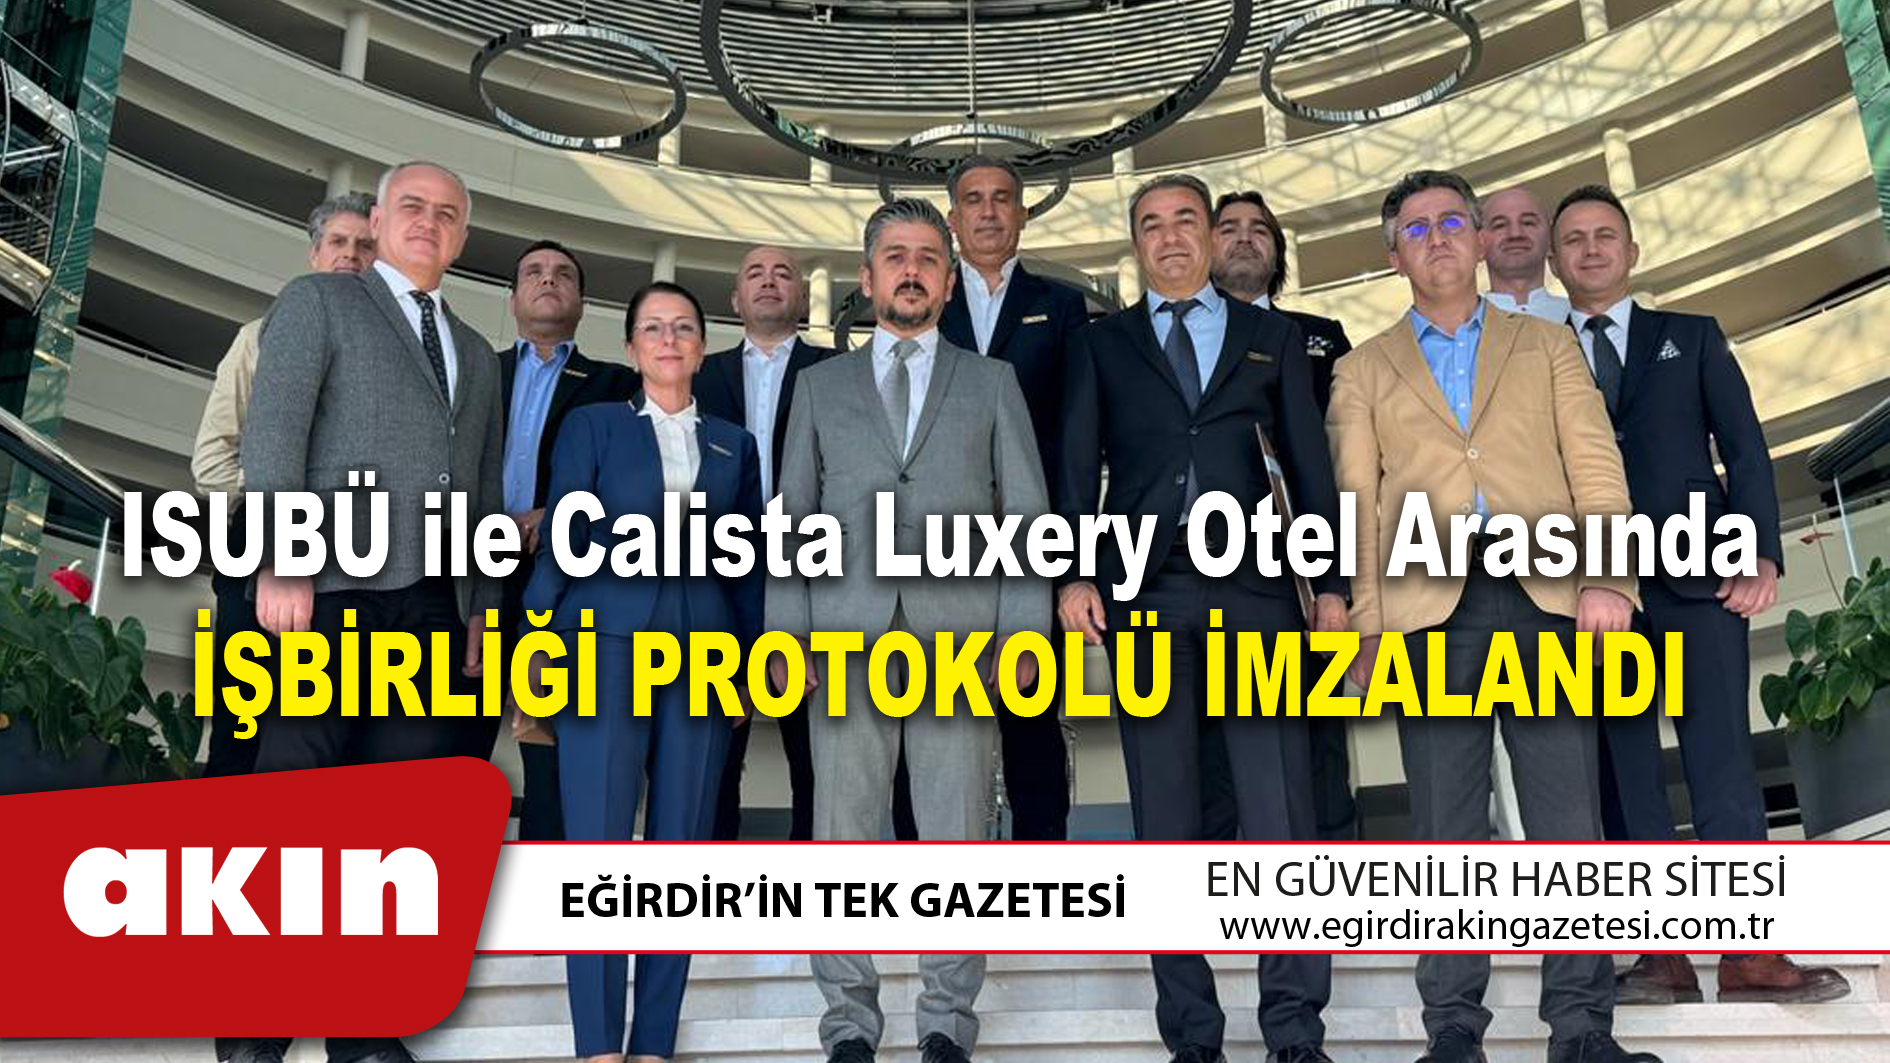 eğirdir haber,akın gazetesi,egirdir haberler,son dakika,ISUBÜ ile Calista Luxery Otel arasında işbirliği protokolü imzalandı